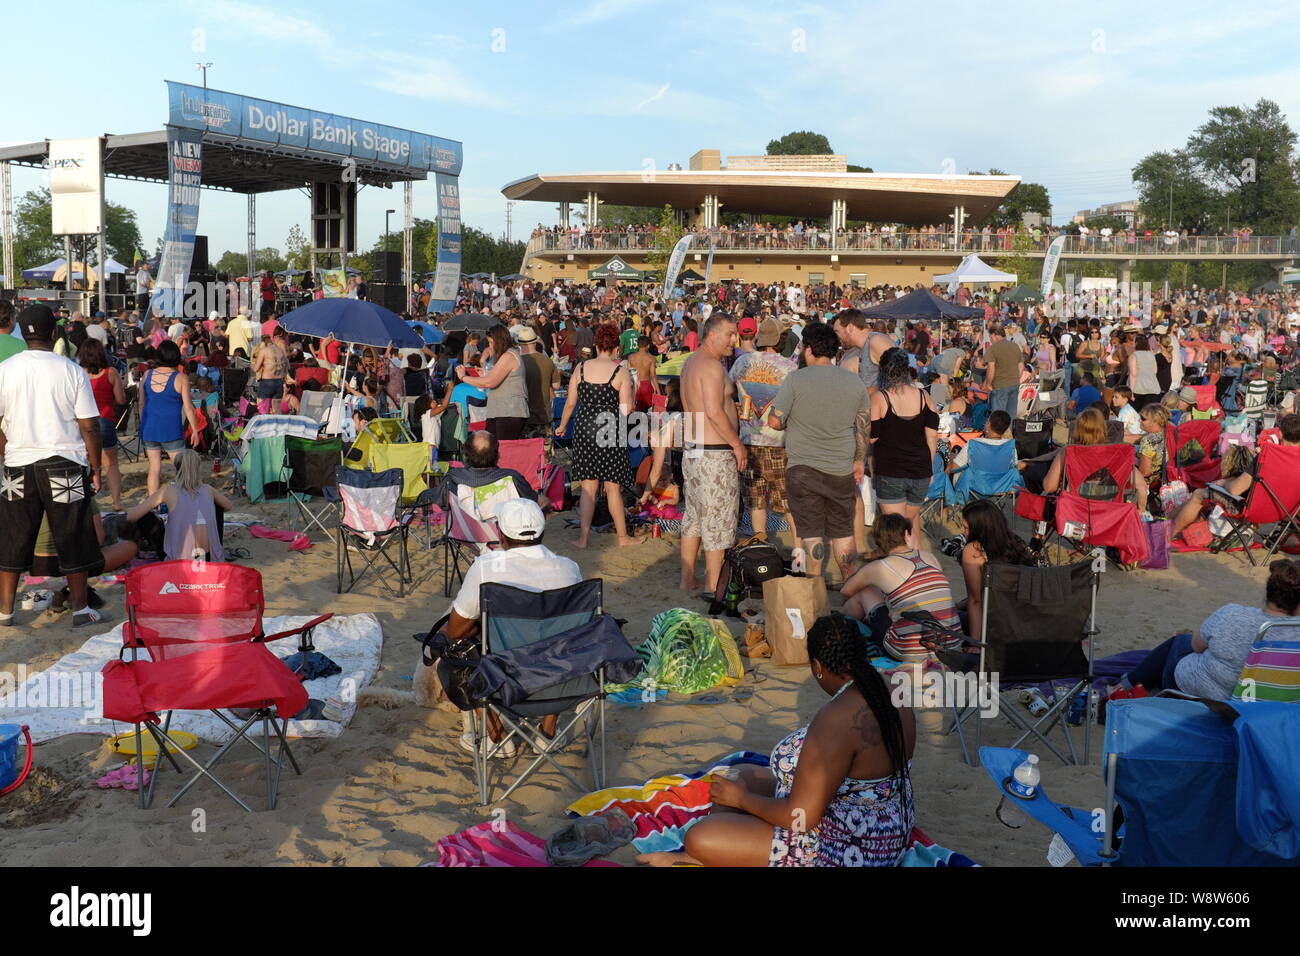 La folla raccolta sulla spiaggia di Edgewater Park in Cleveland Ohio settimanale per la rassegna estiva di concerti. Foto Stock